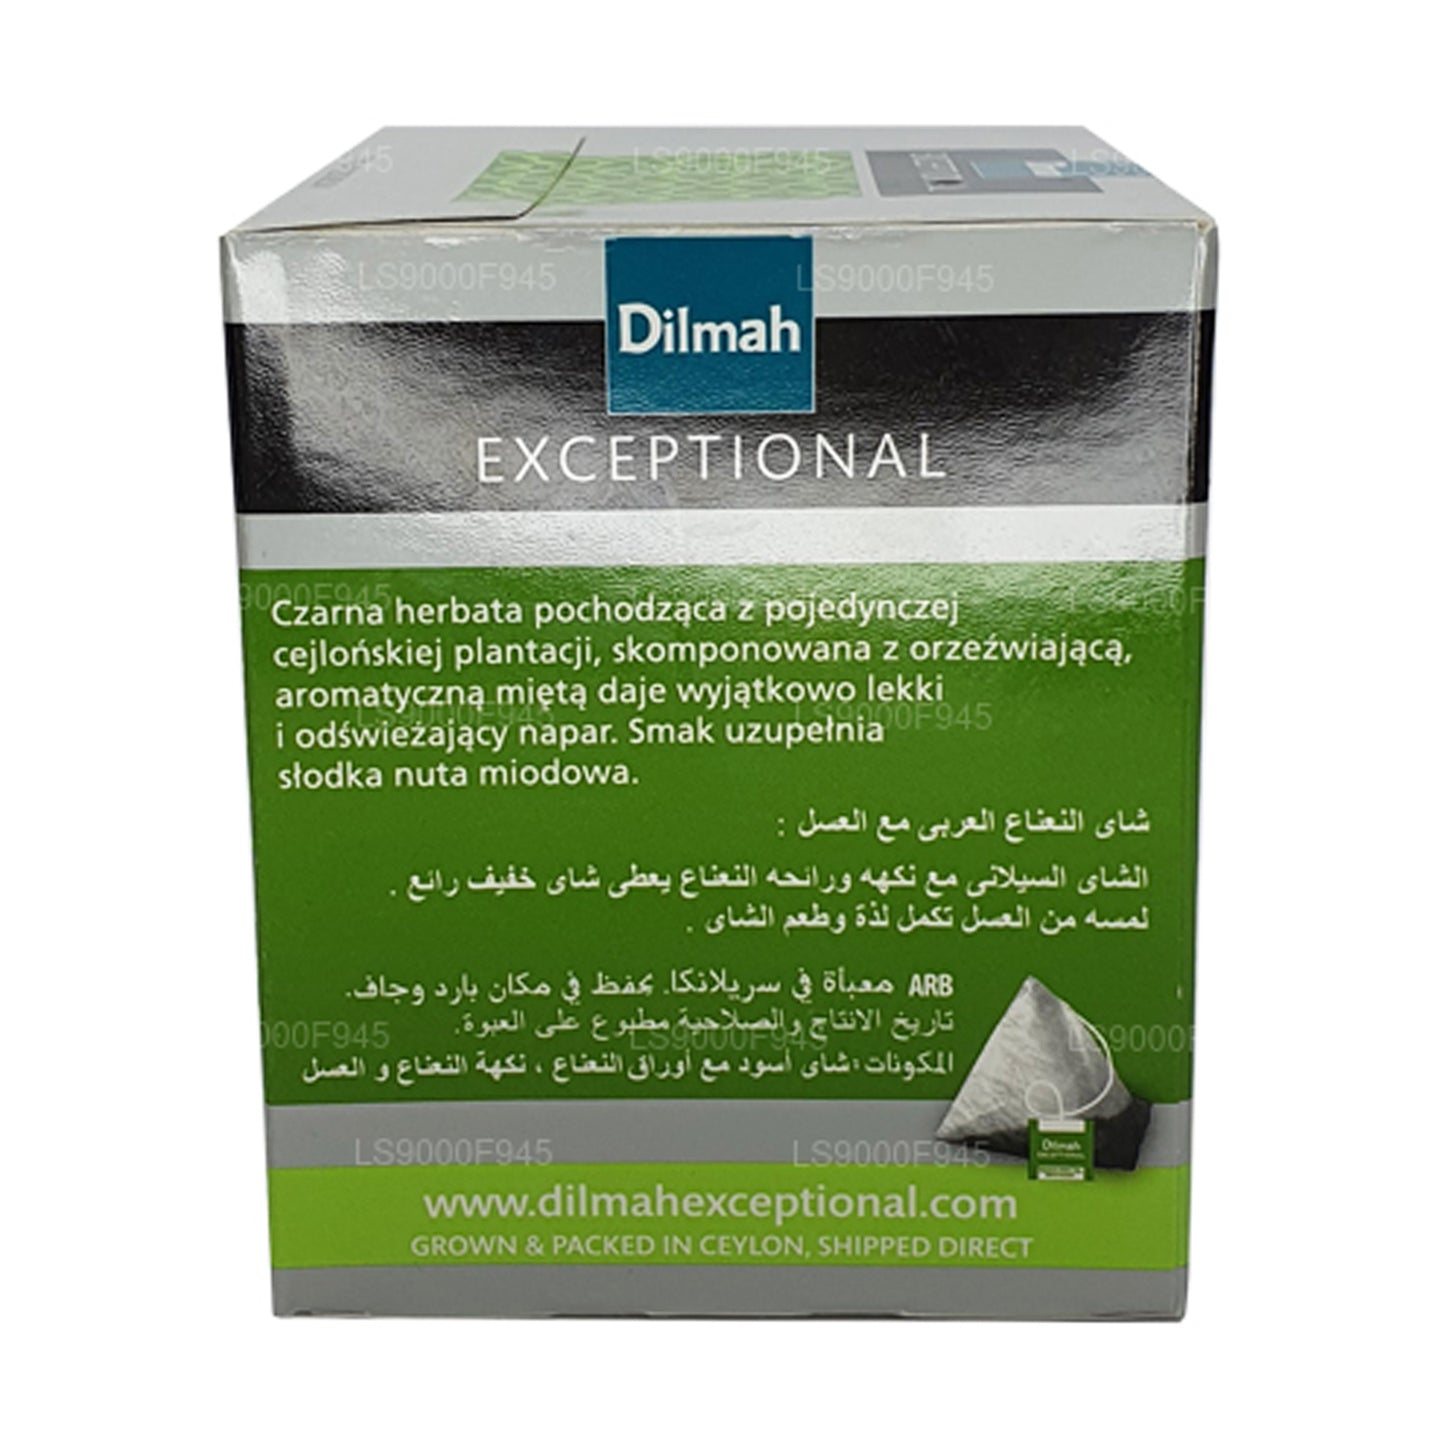 Dilmah Wyjątkowy Liść z Miętą Arabską i Miodem (20 torebek herbaty)